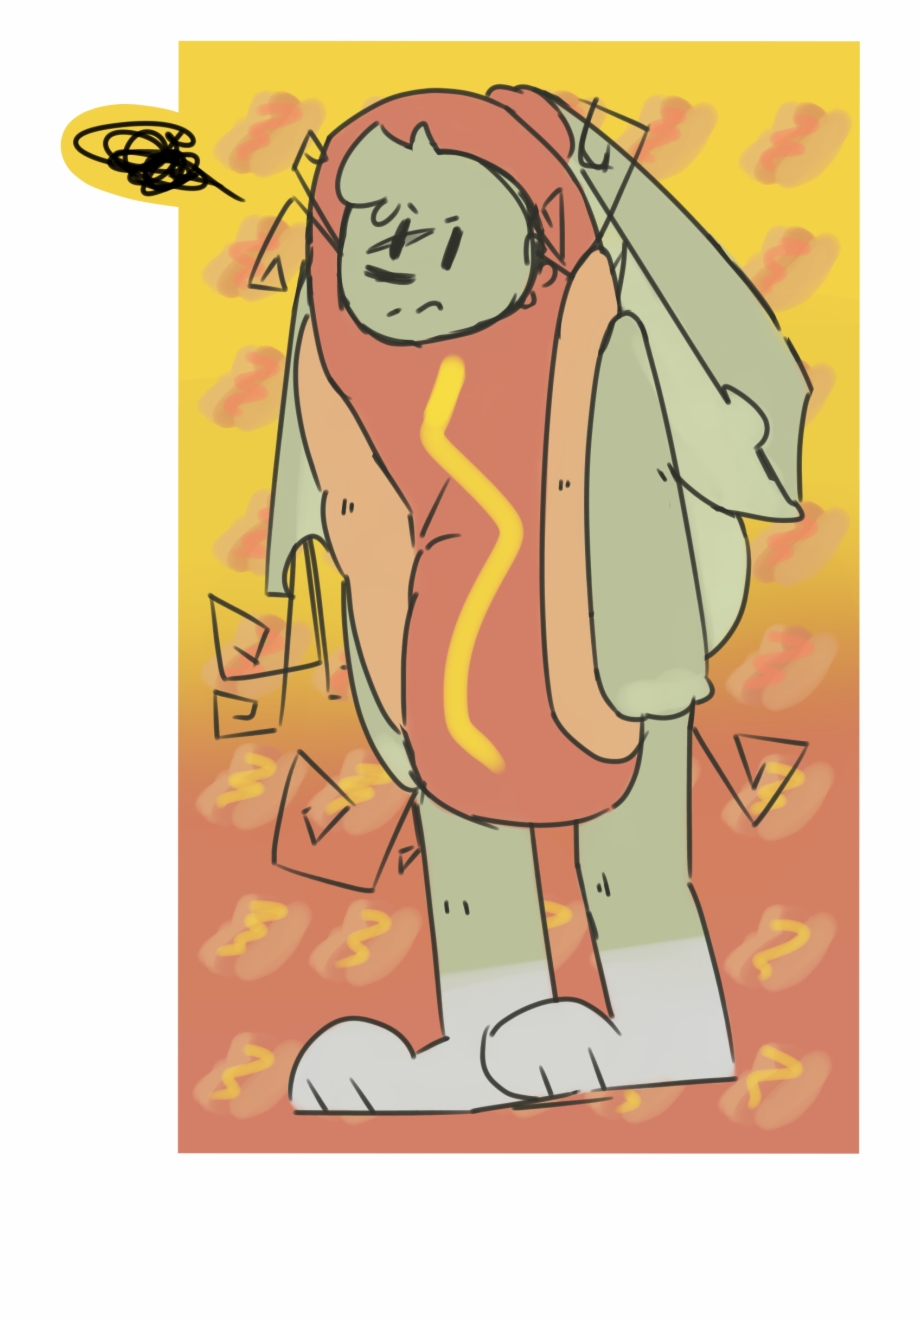 Artworkhe A Hotdog Cartoon